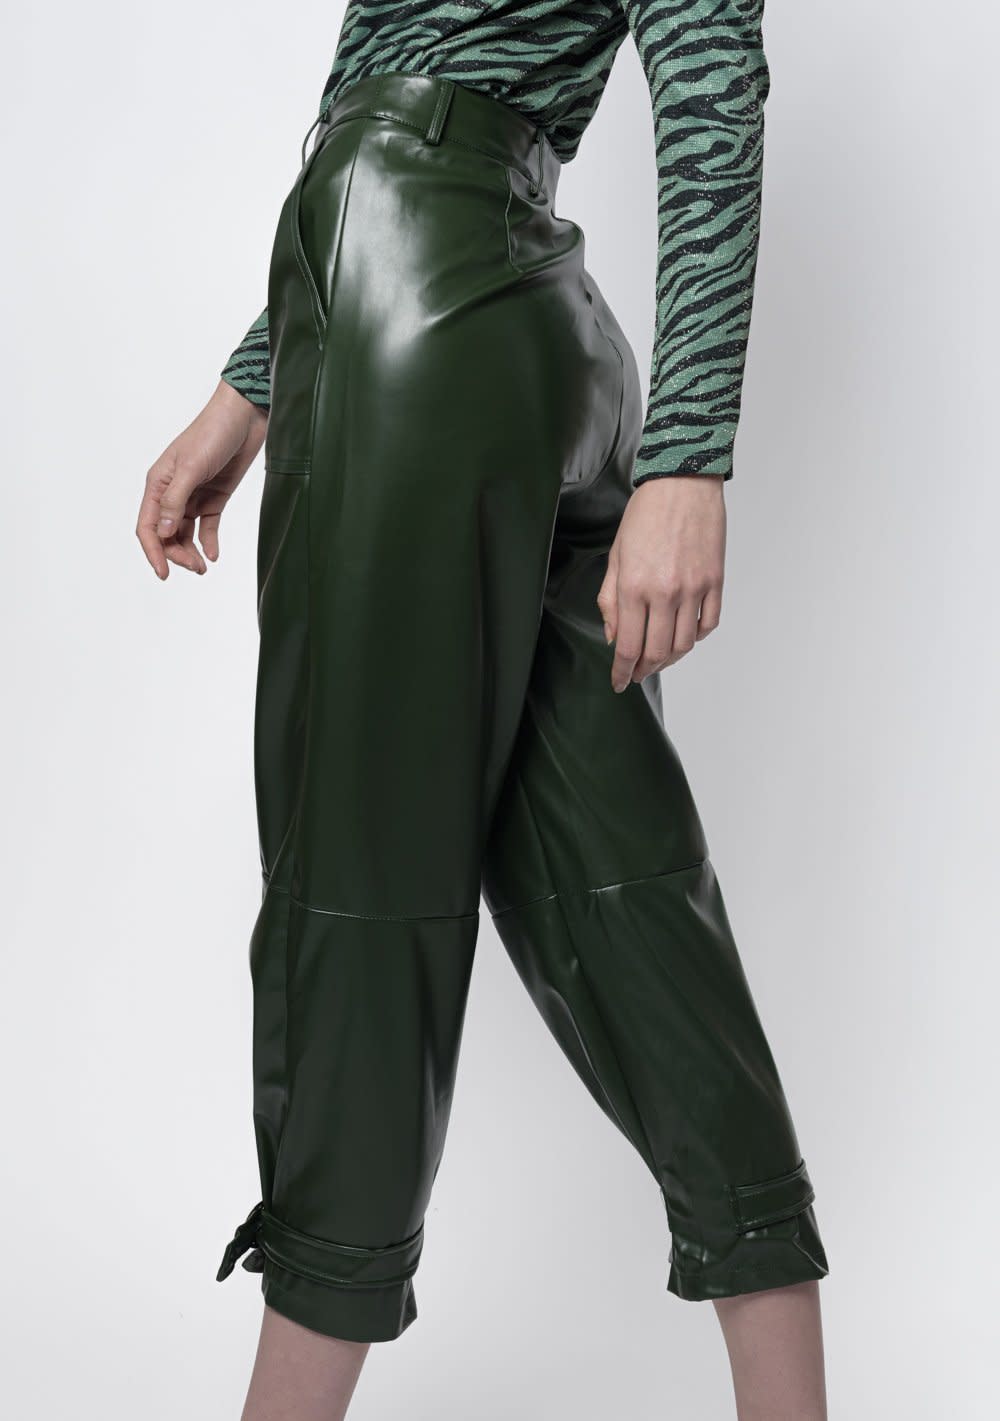 Green Pants. Talla M [2609]